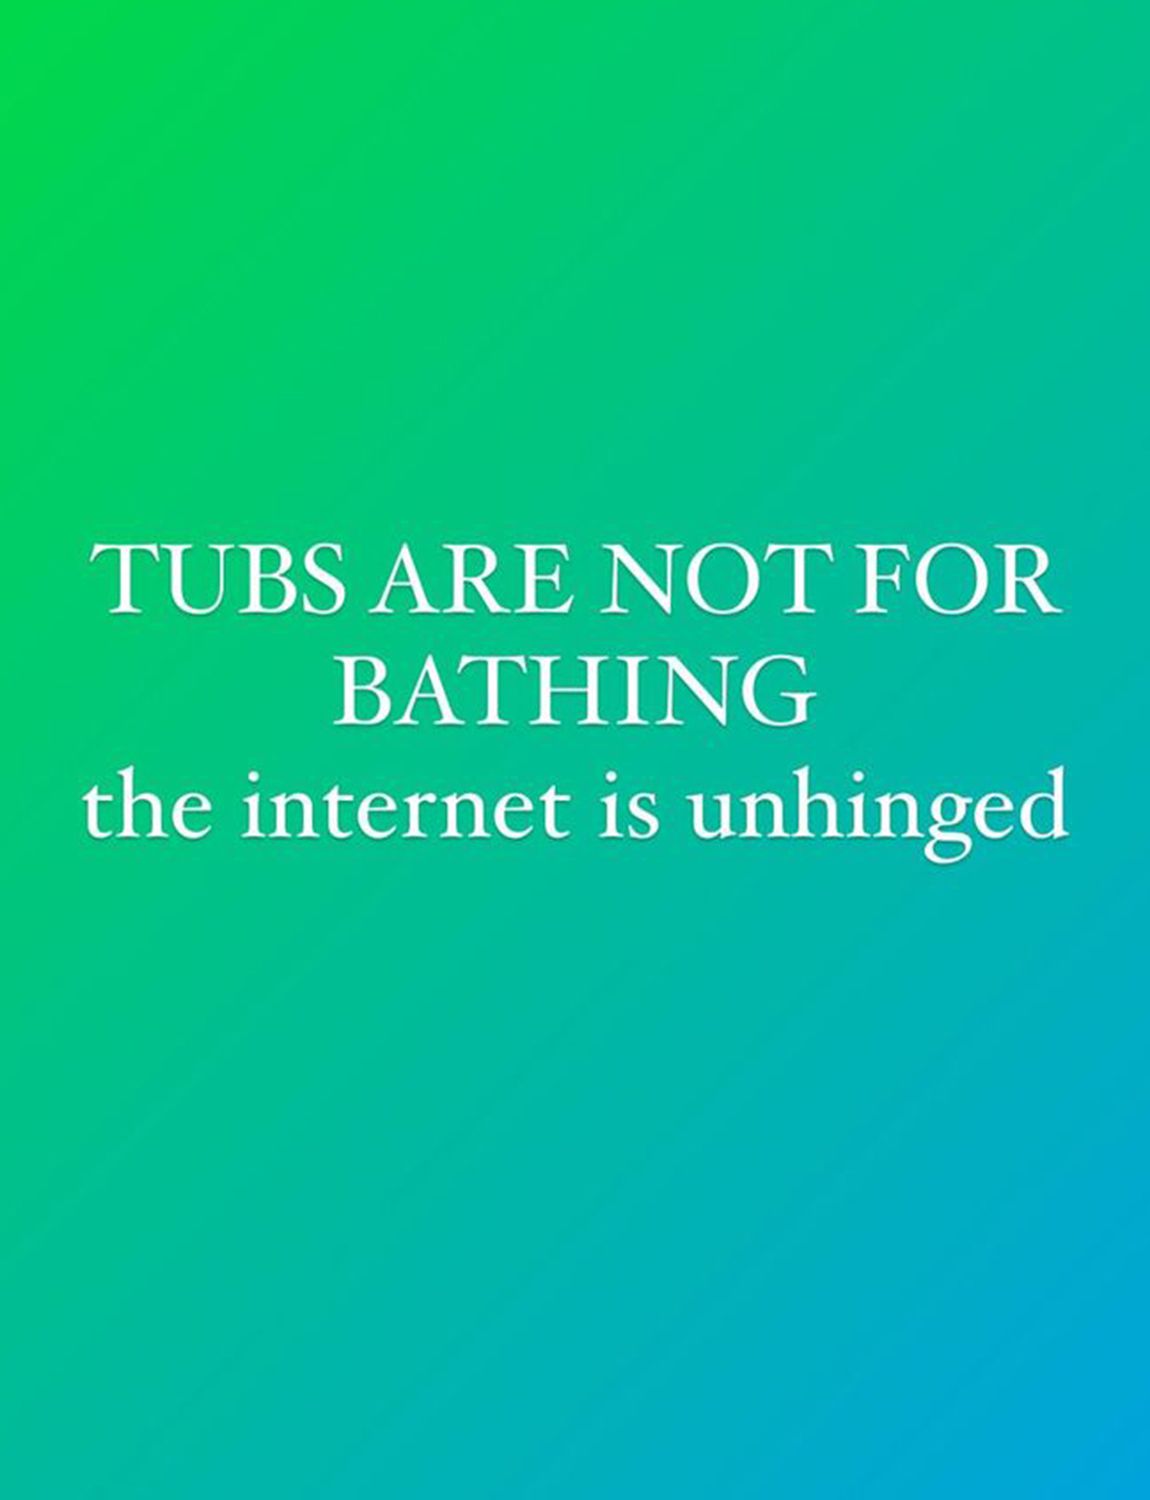 Chrissy Teigen's Instagram story about bathing